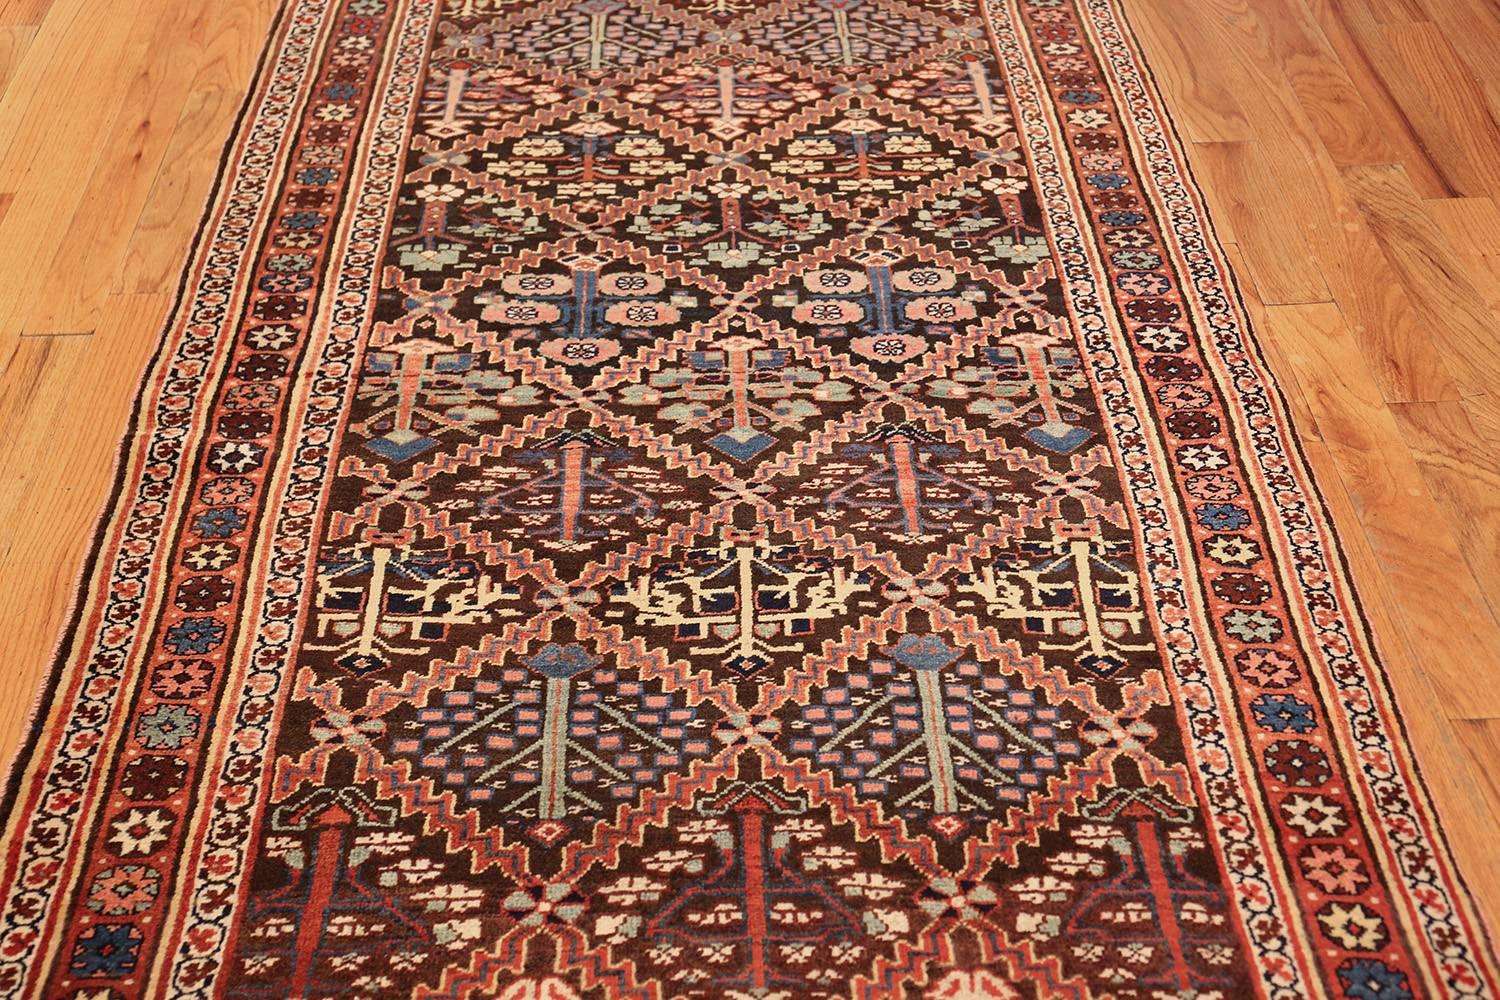 Beautiful shrub design Persian antique Bidjar carpet, origin: Persian, date circa 1890. Size: 4 ft 1 in x 12 ft 6 in (1.24 m x 3.81 m).